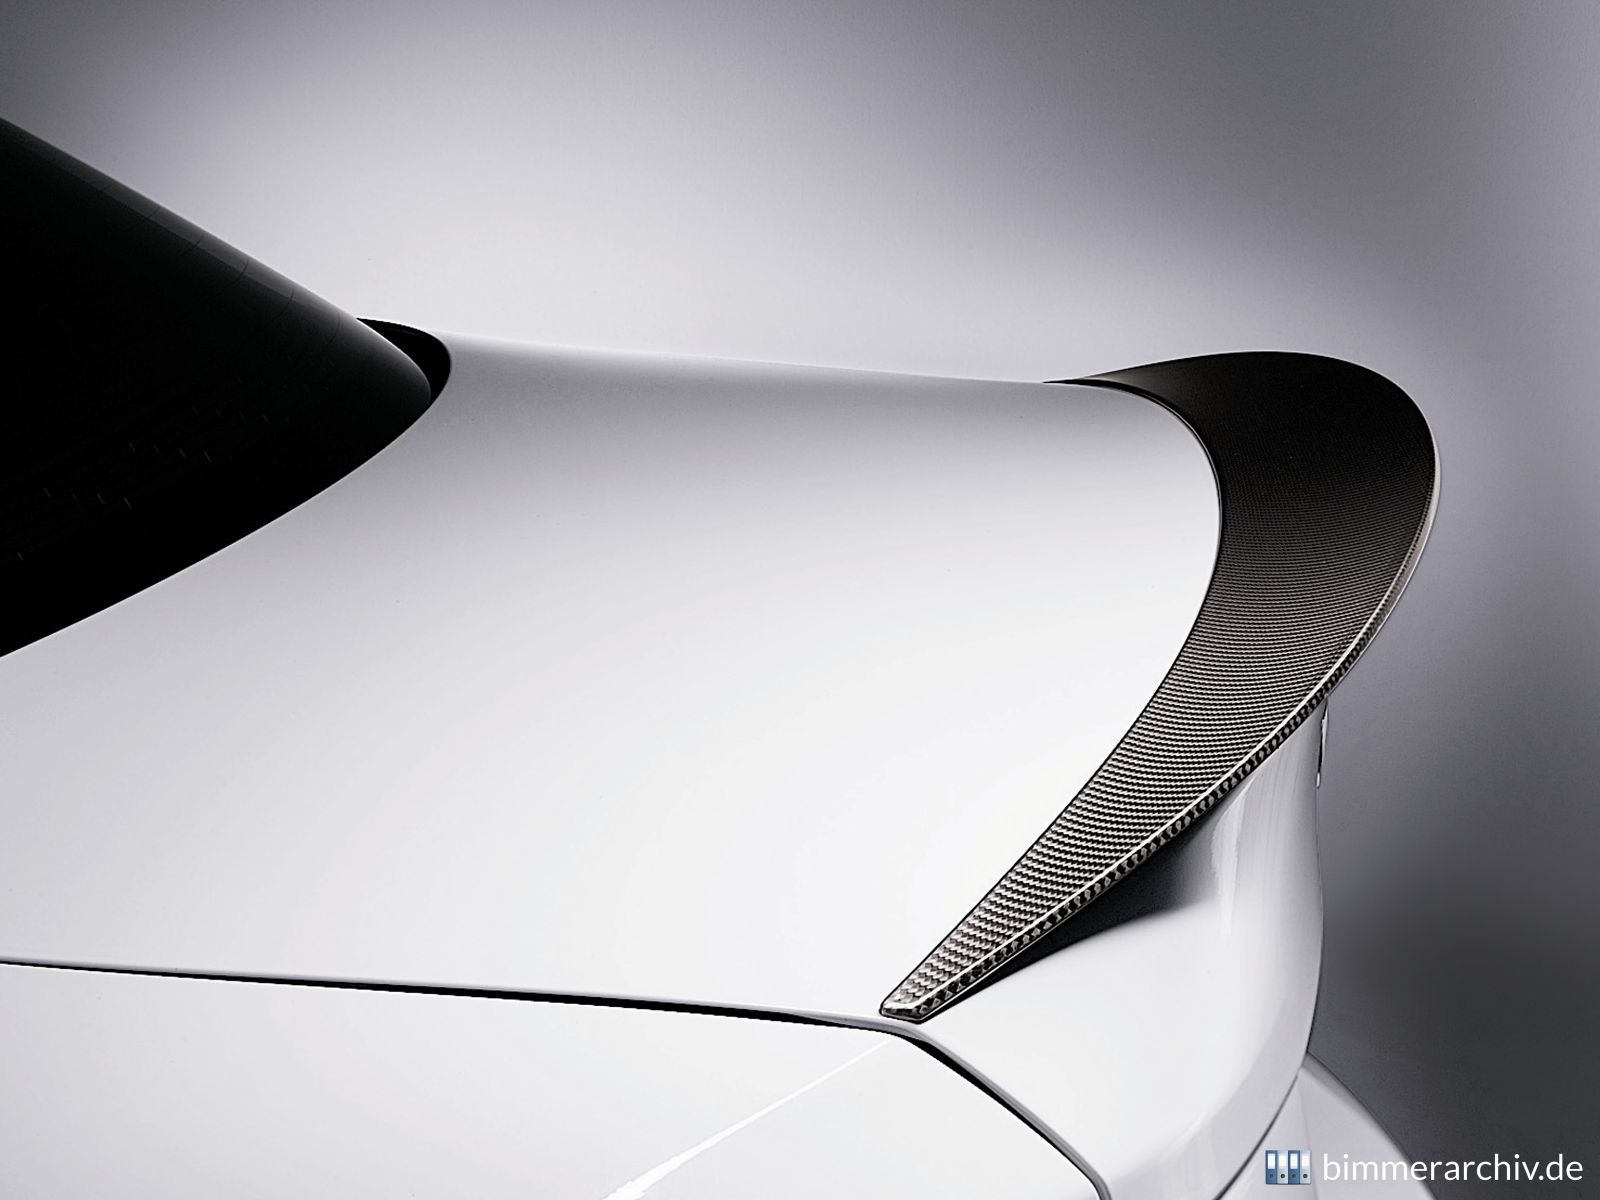 Baureihenarchiv für BMW Fahrzeuge · Original BMW Zubehör - BMW Performance  Heckspoiler für das 1er Coupé ·